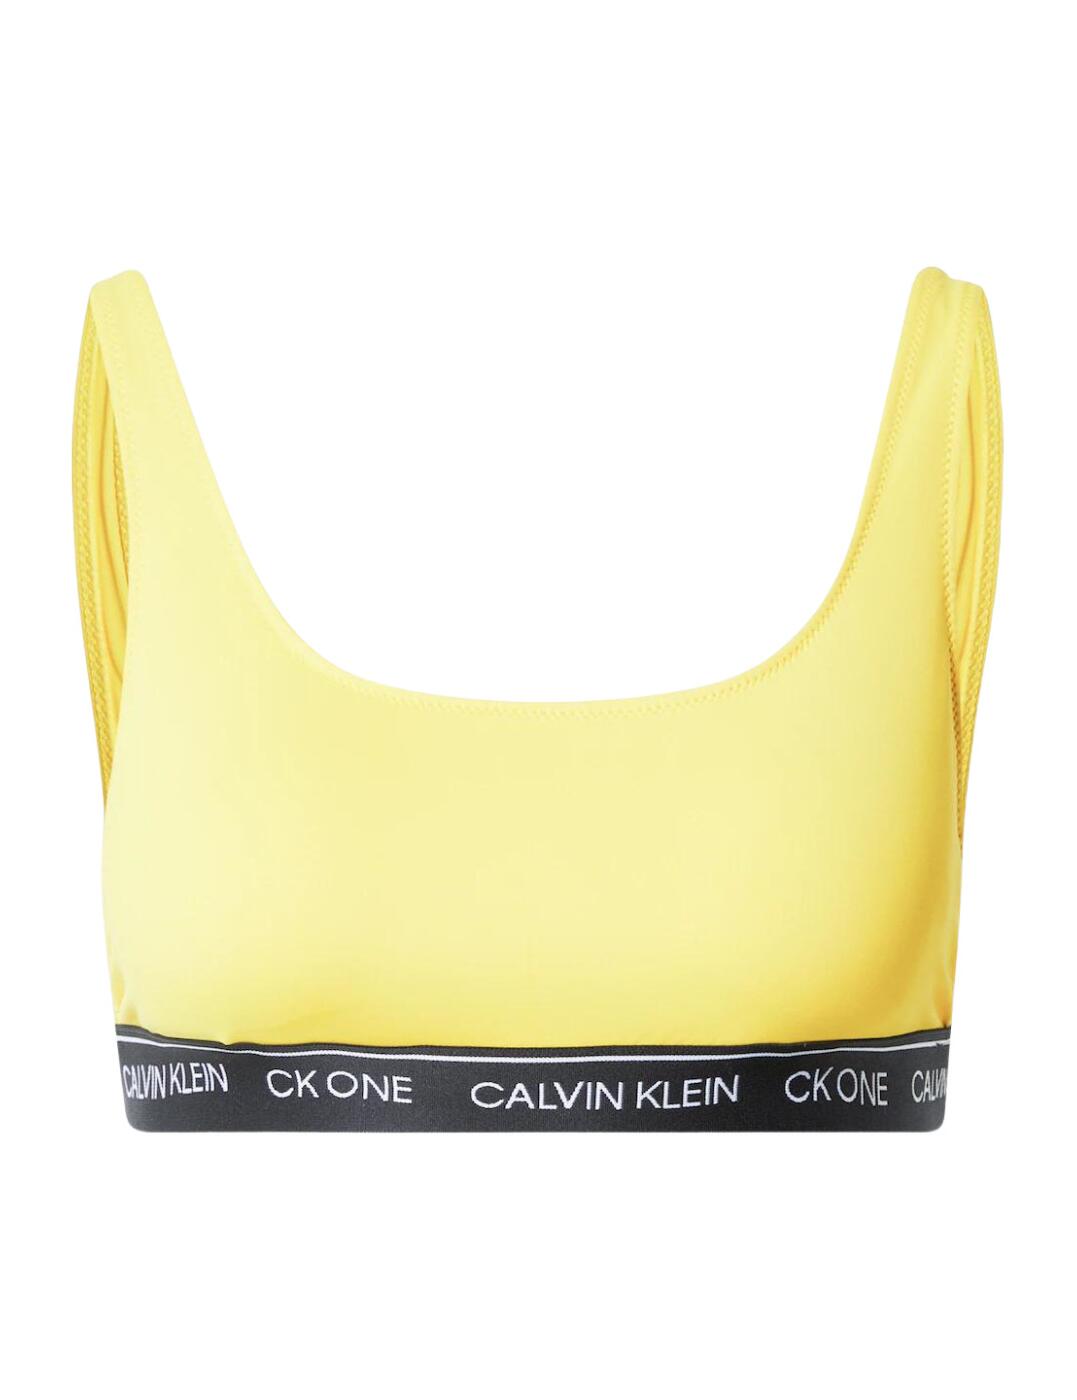 Calvin Klein CK One Swim Bralette Top - Belle Lingerie